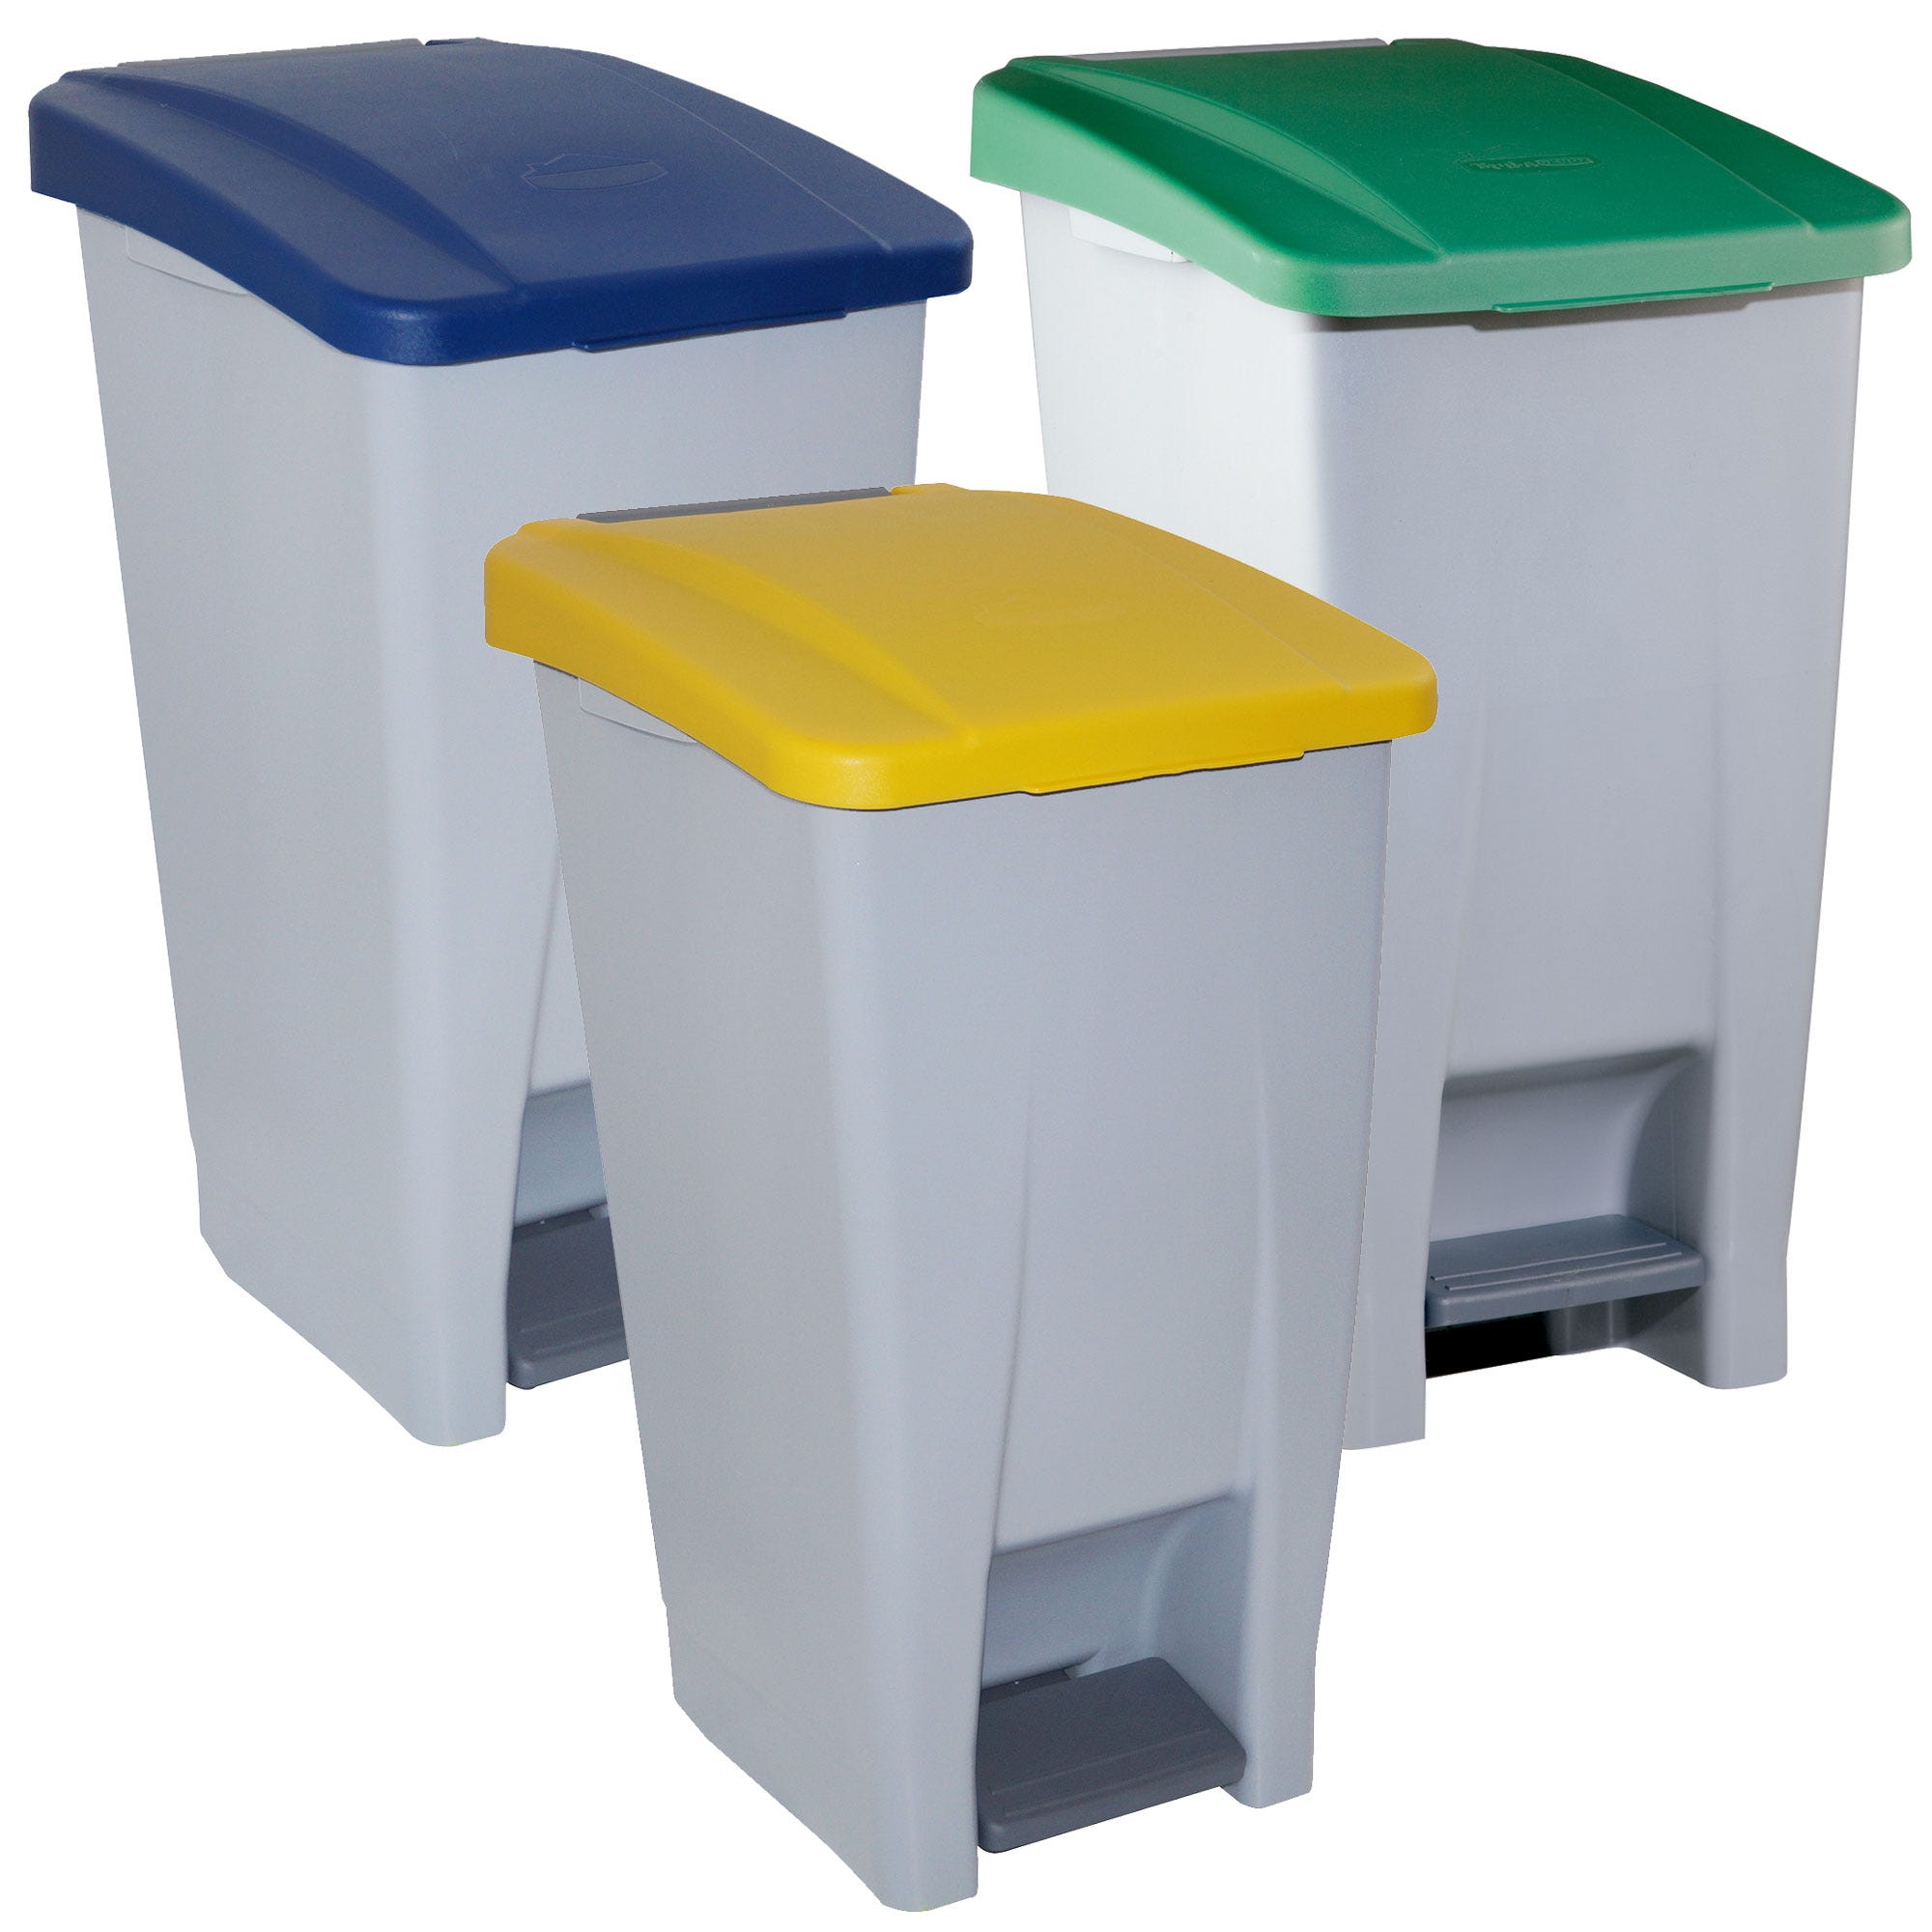 Confezione raccolta differenziata per contenitori selettivi: 3 contenitori  colorati da 60 litri. Capacità totale 180 litri